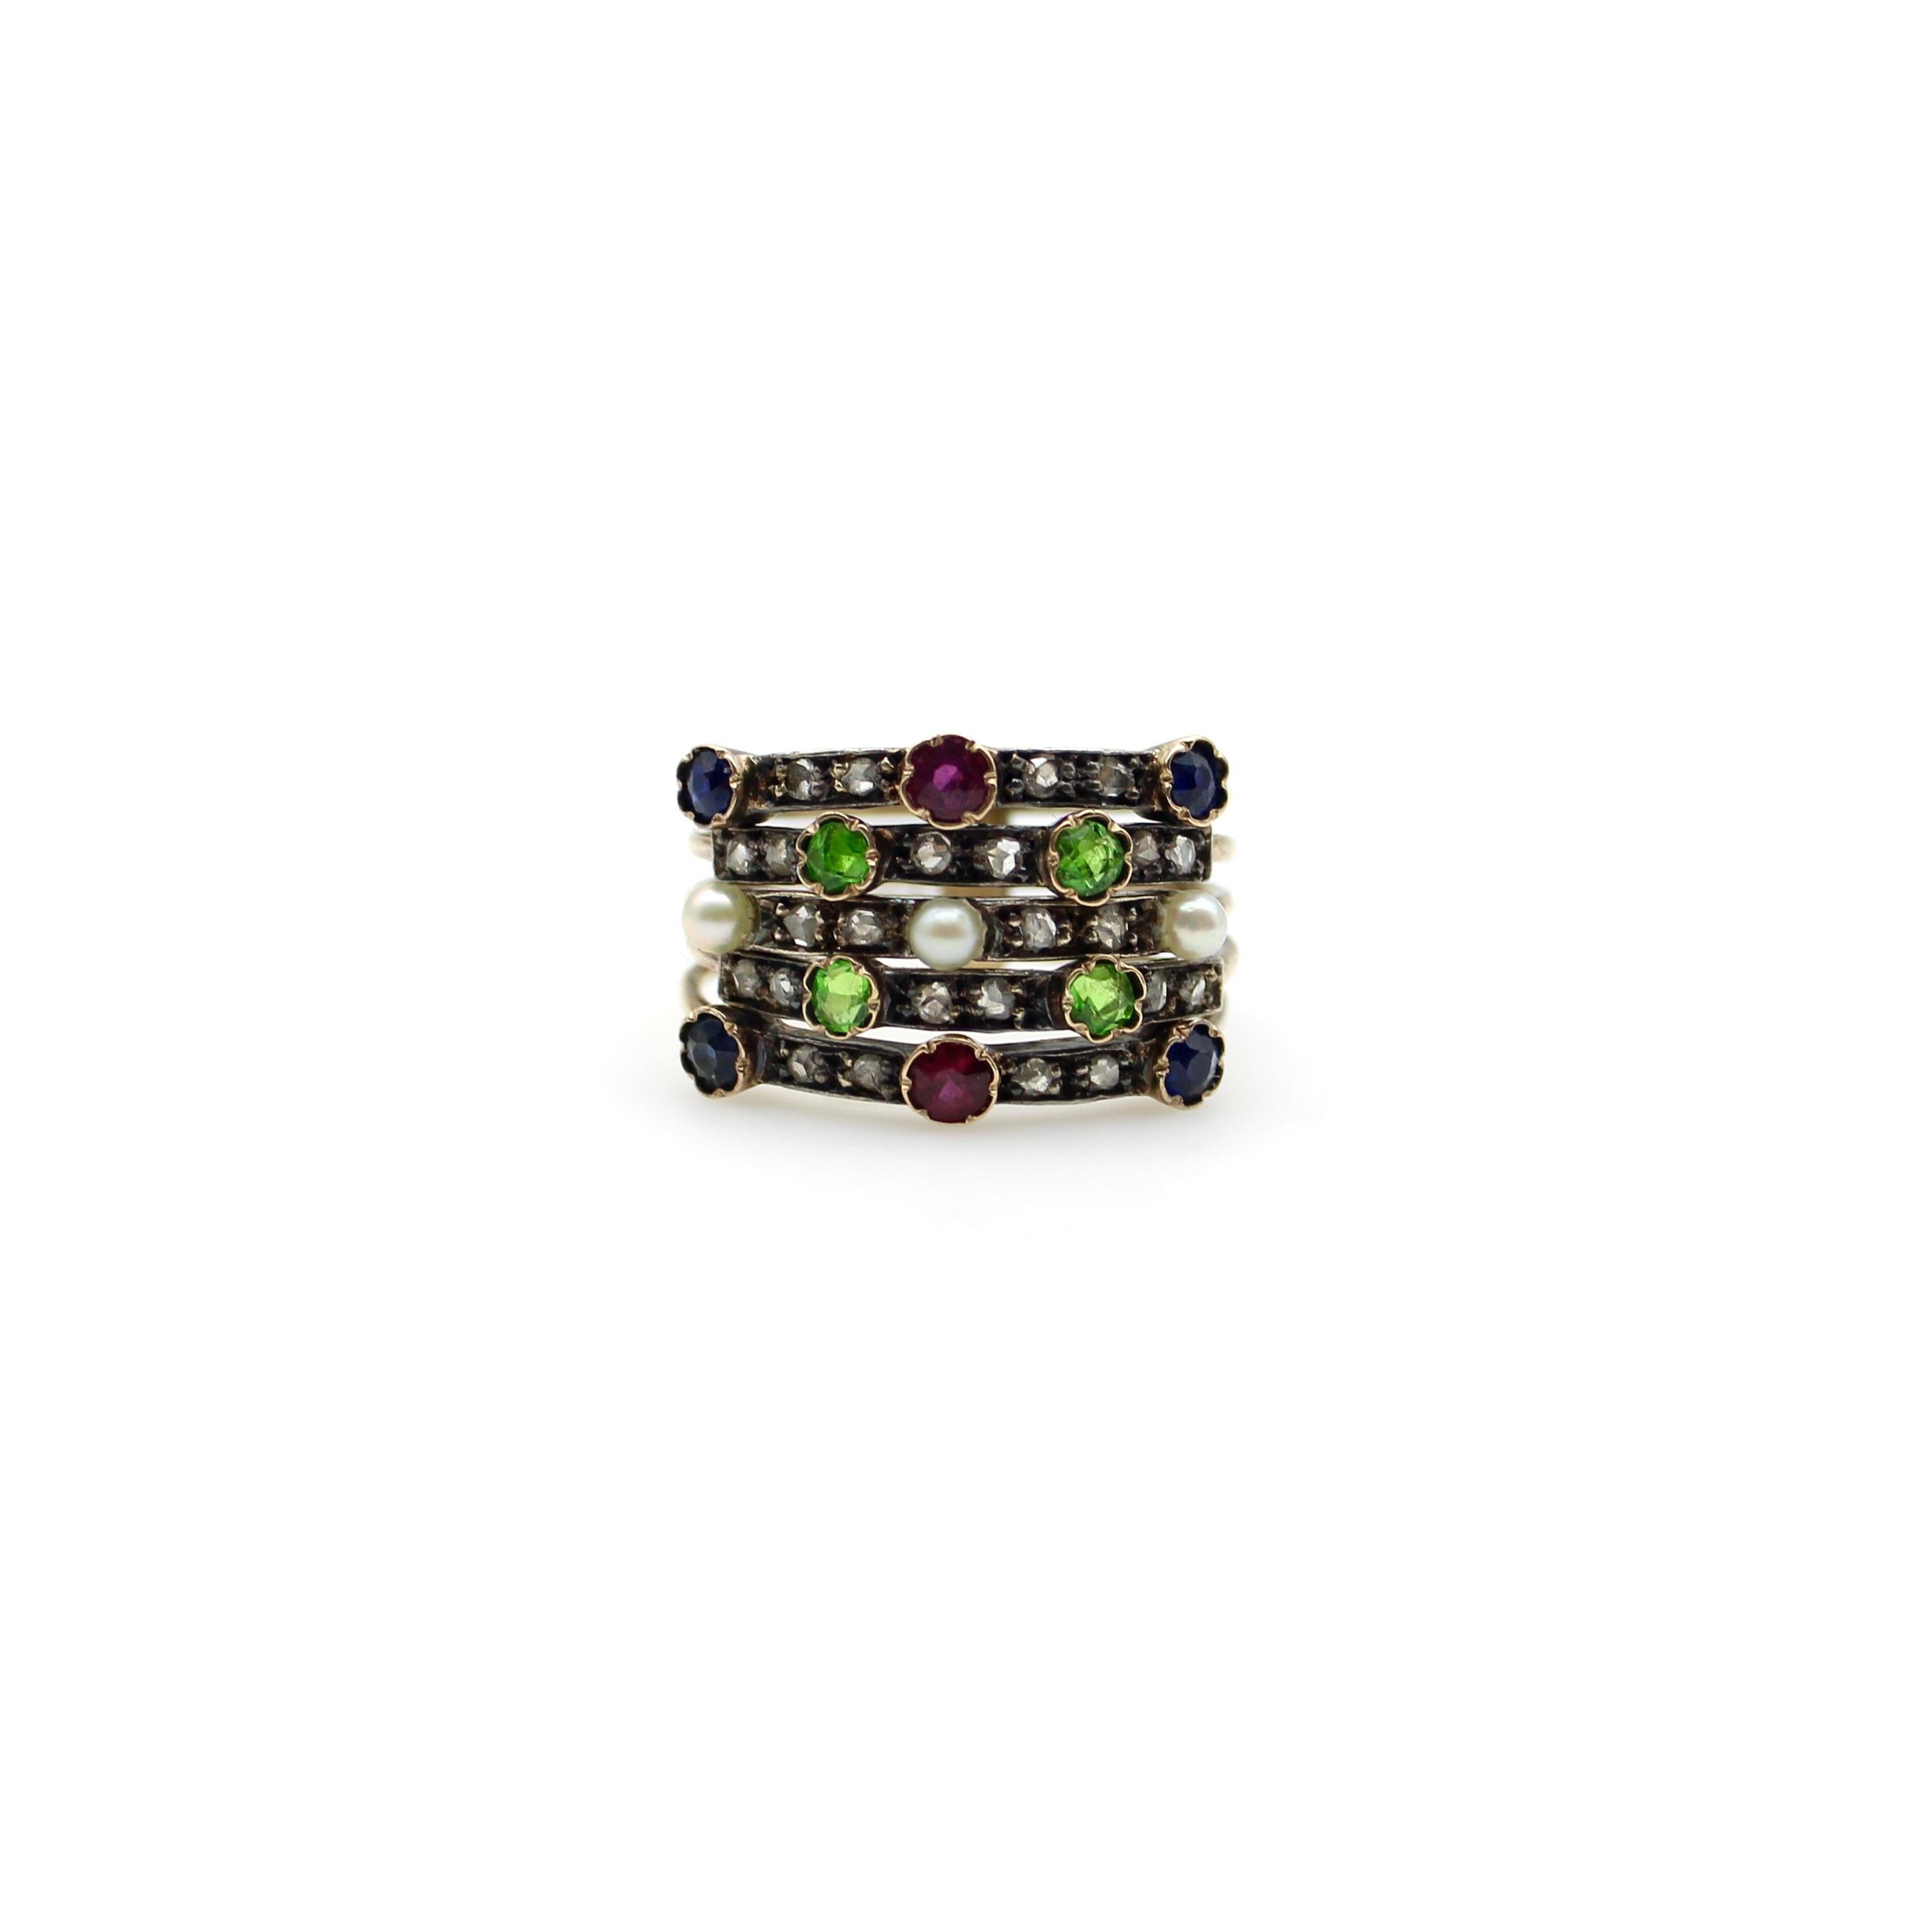 Dieser wunderschöne edwardianische Haremsring aus 14 Karat Gold enthält eine Reihe von Diamanten im Rosenschliff, Perlen, Saphiren, Rubinen und grünen Demantoid-Granaten. Der Ring besteht aus fünf Bändern aus 14-karätigem Gold, die am unteren Ende